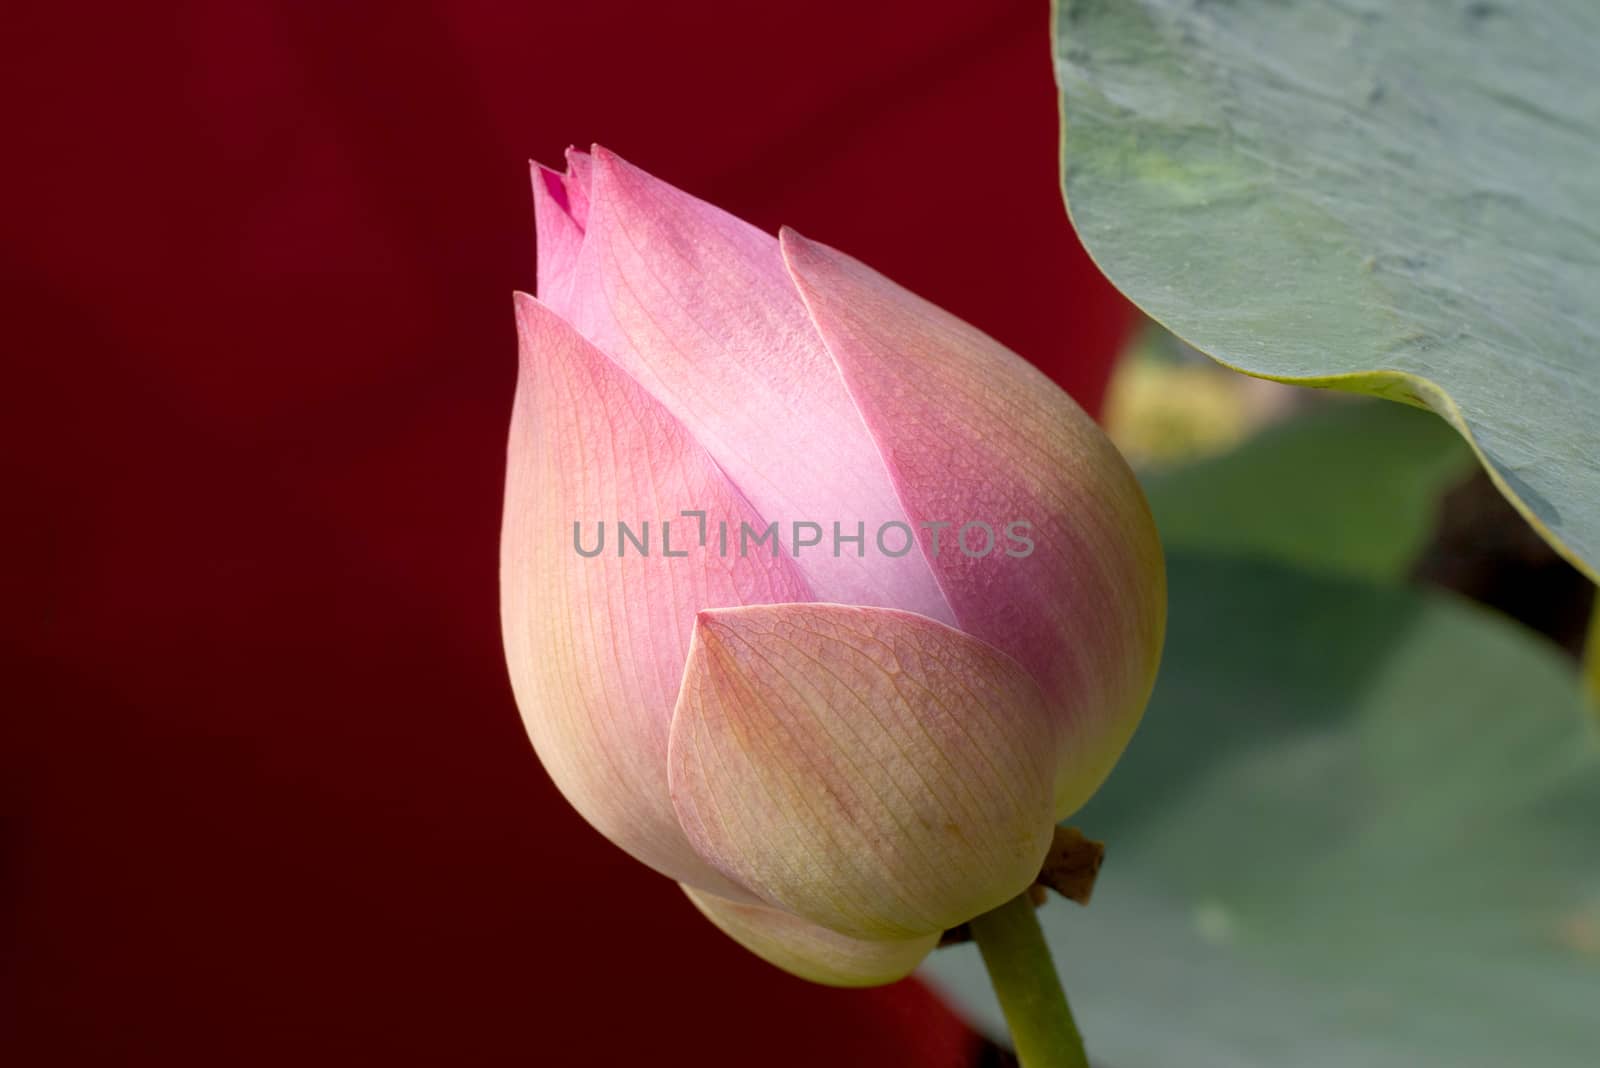 Pink lotus flower bud close-up